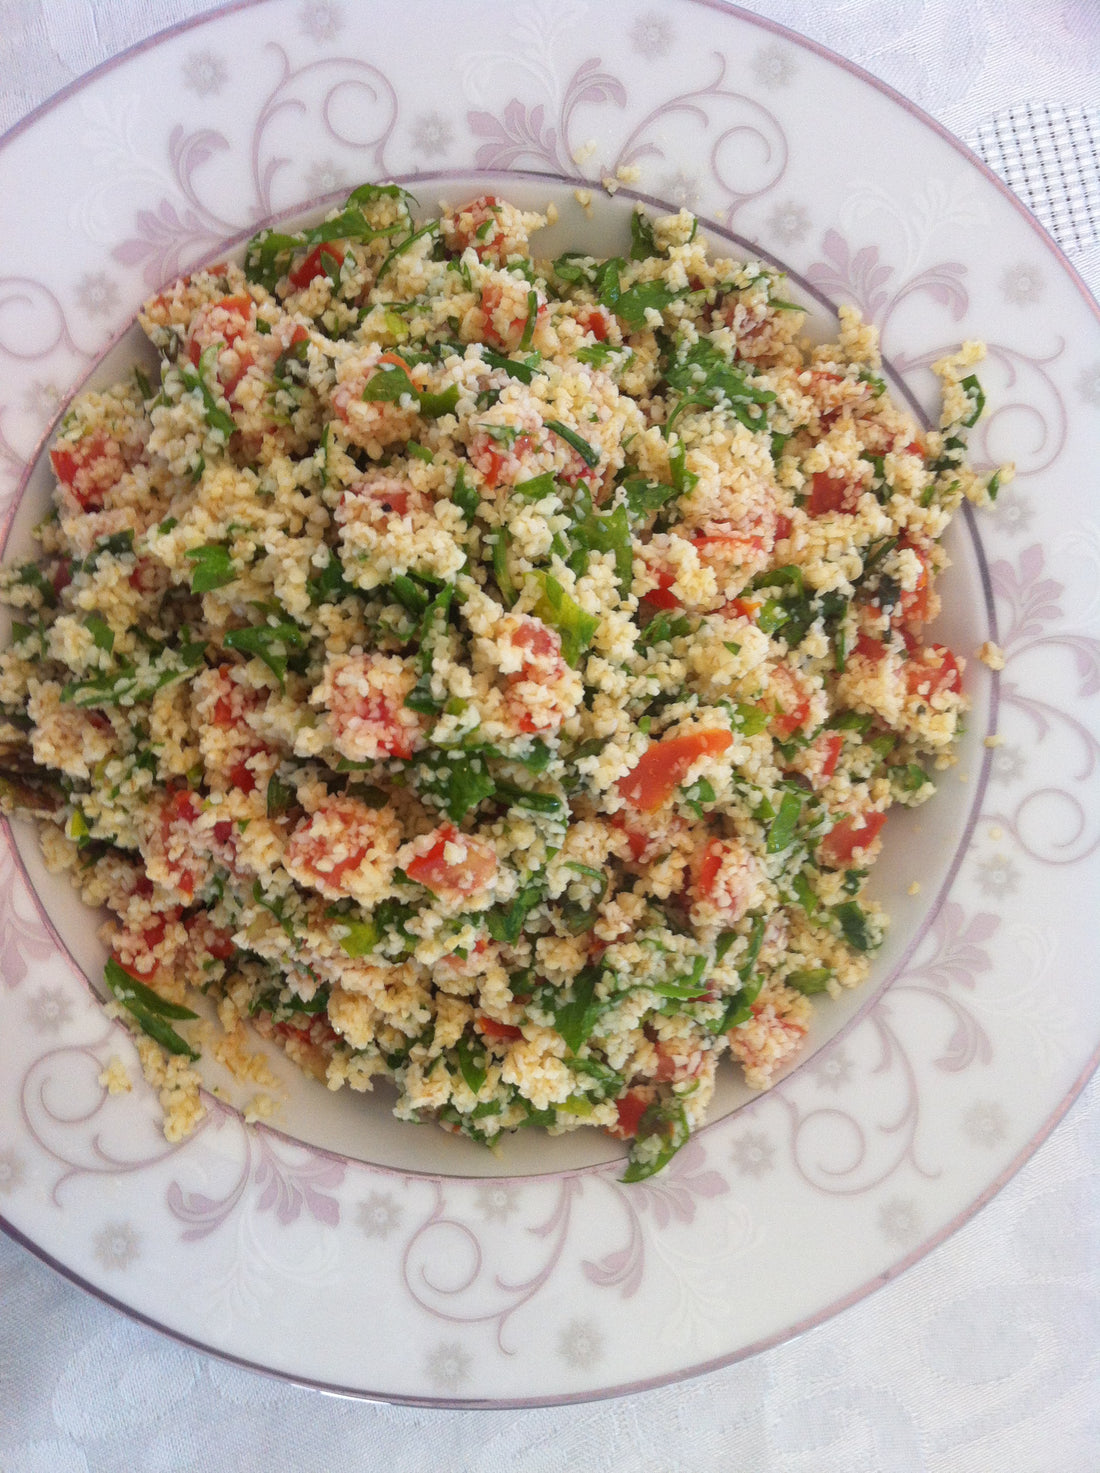 Tabouli salad recipe | Mediterranean Diet